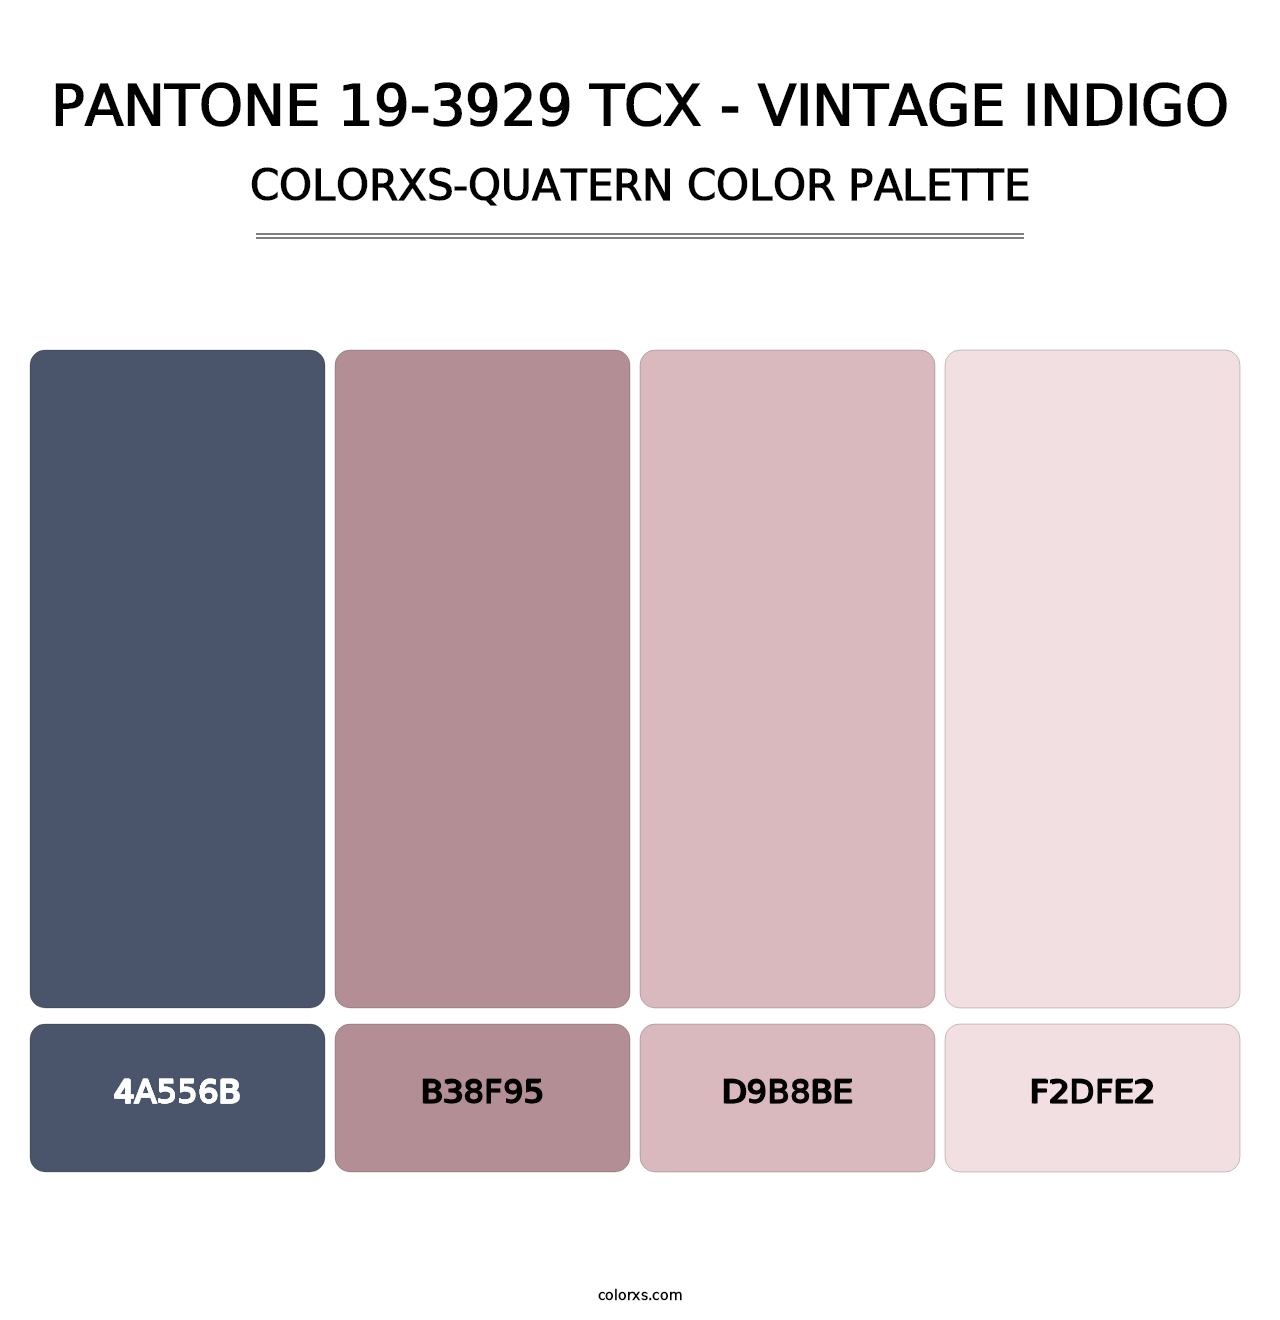 PANTONE 19-3929 TCX - Vintage Indigo - Colorxs Quatern Palette